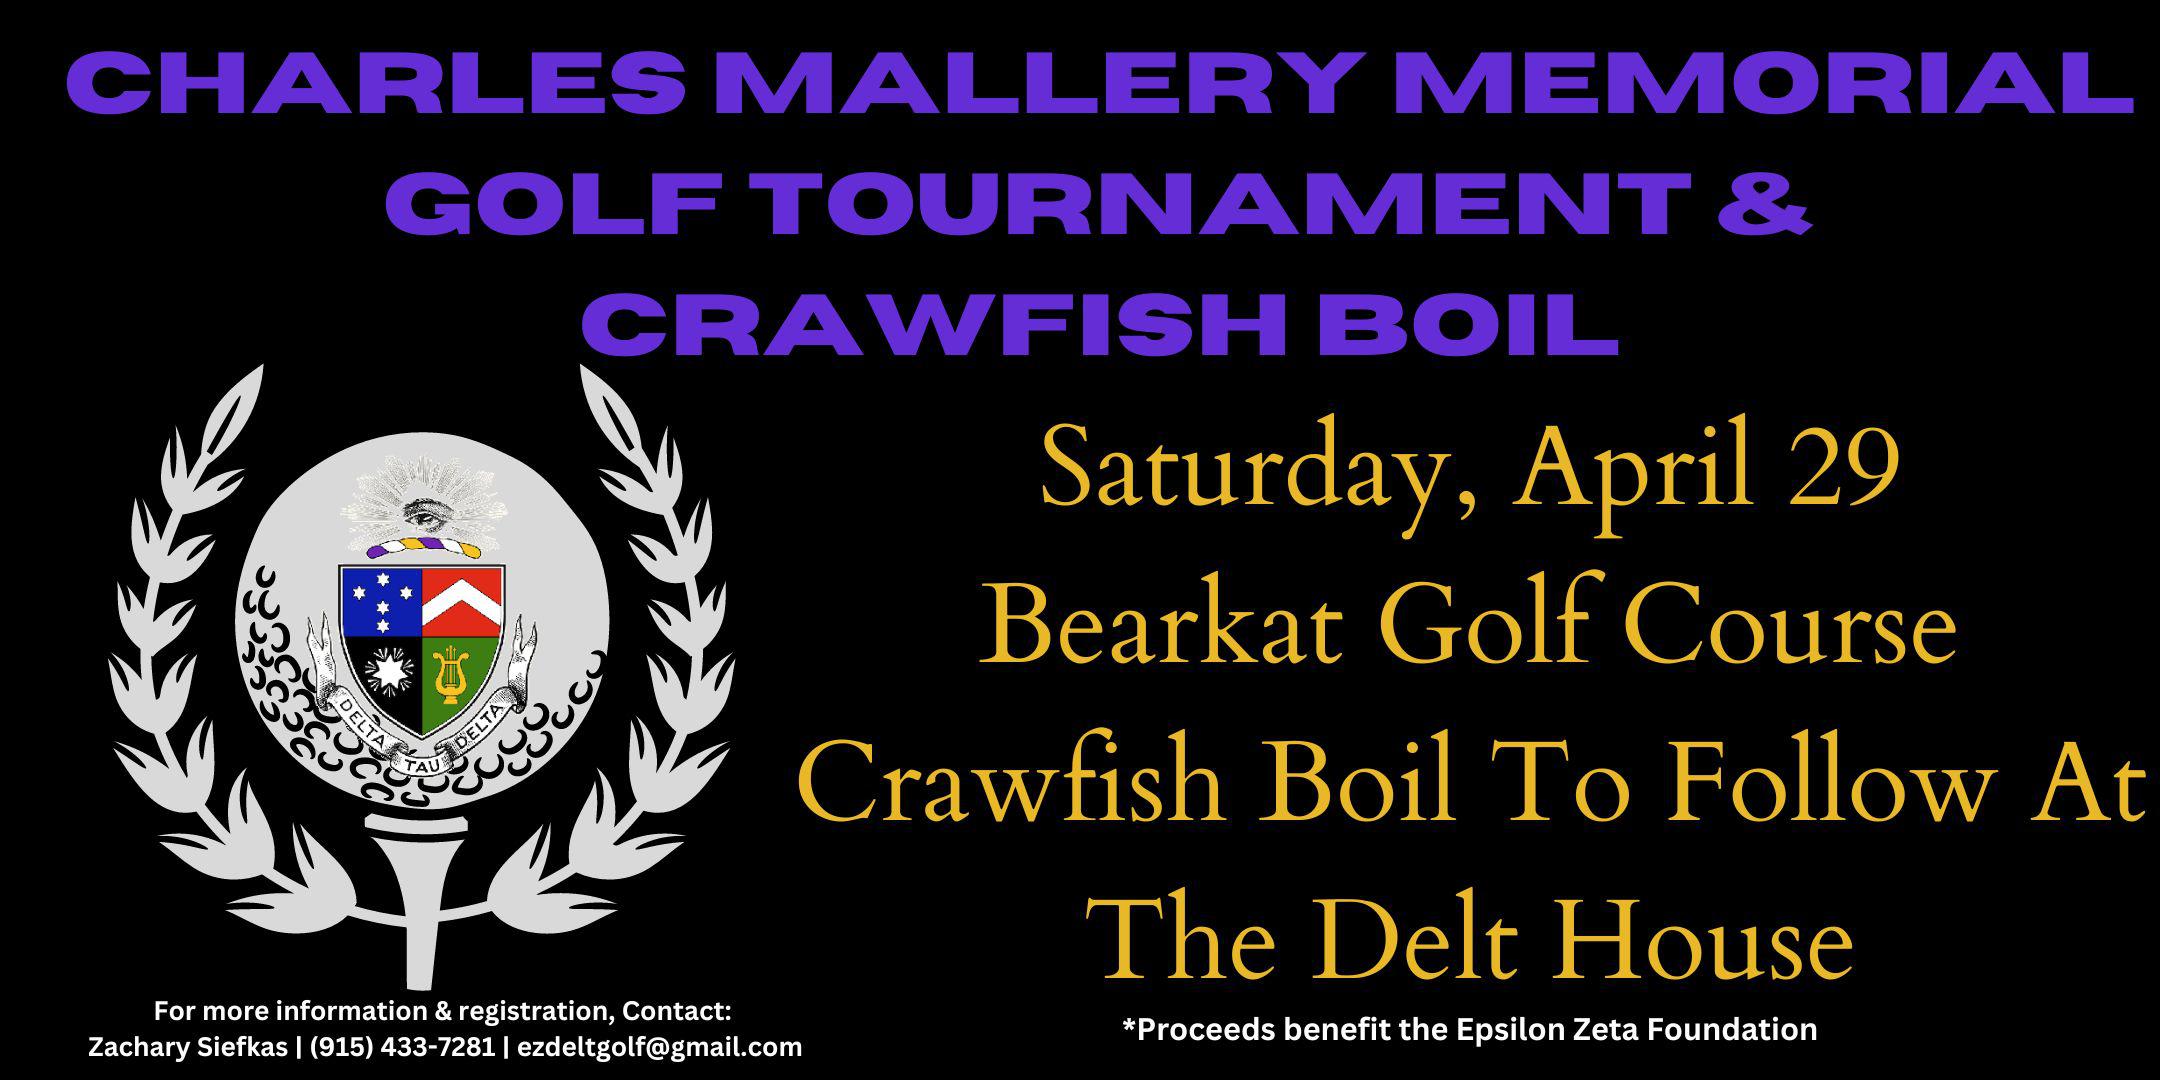 Charles Mallery Memorial Golf Tournament & Crawfish Boil